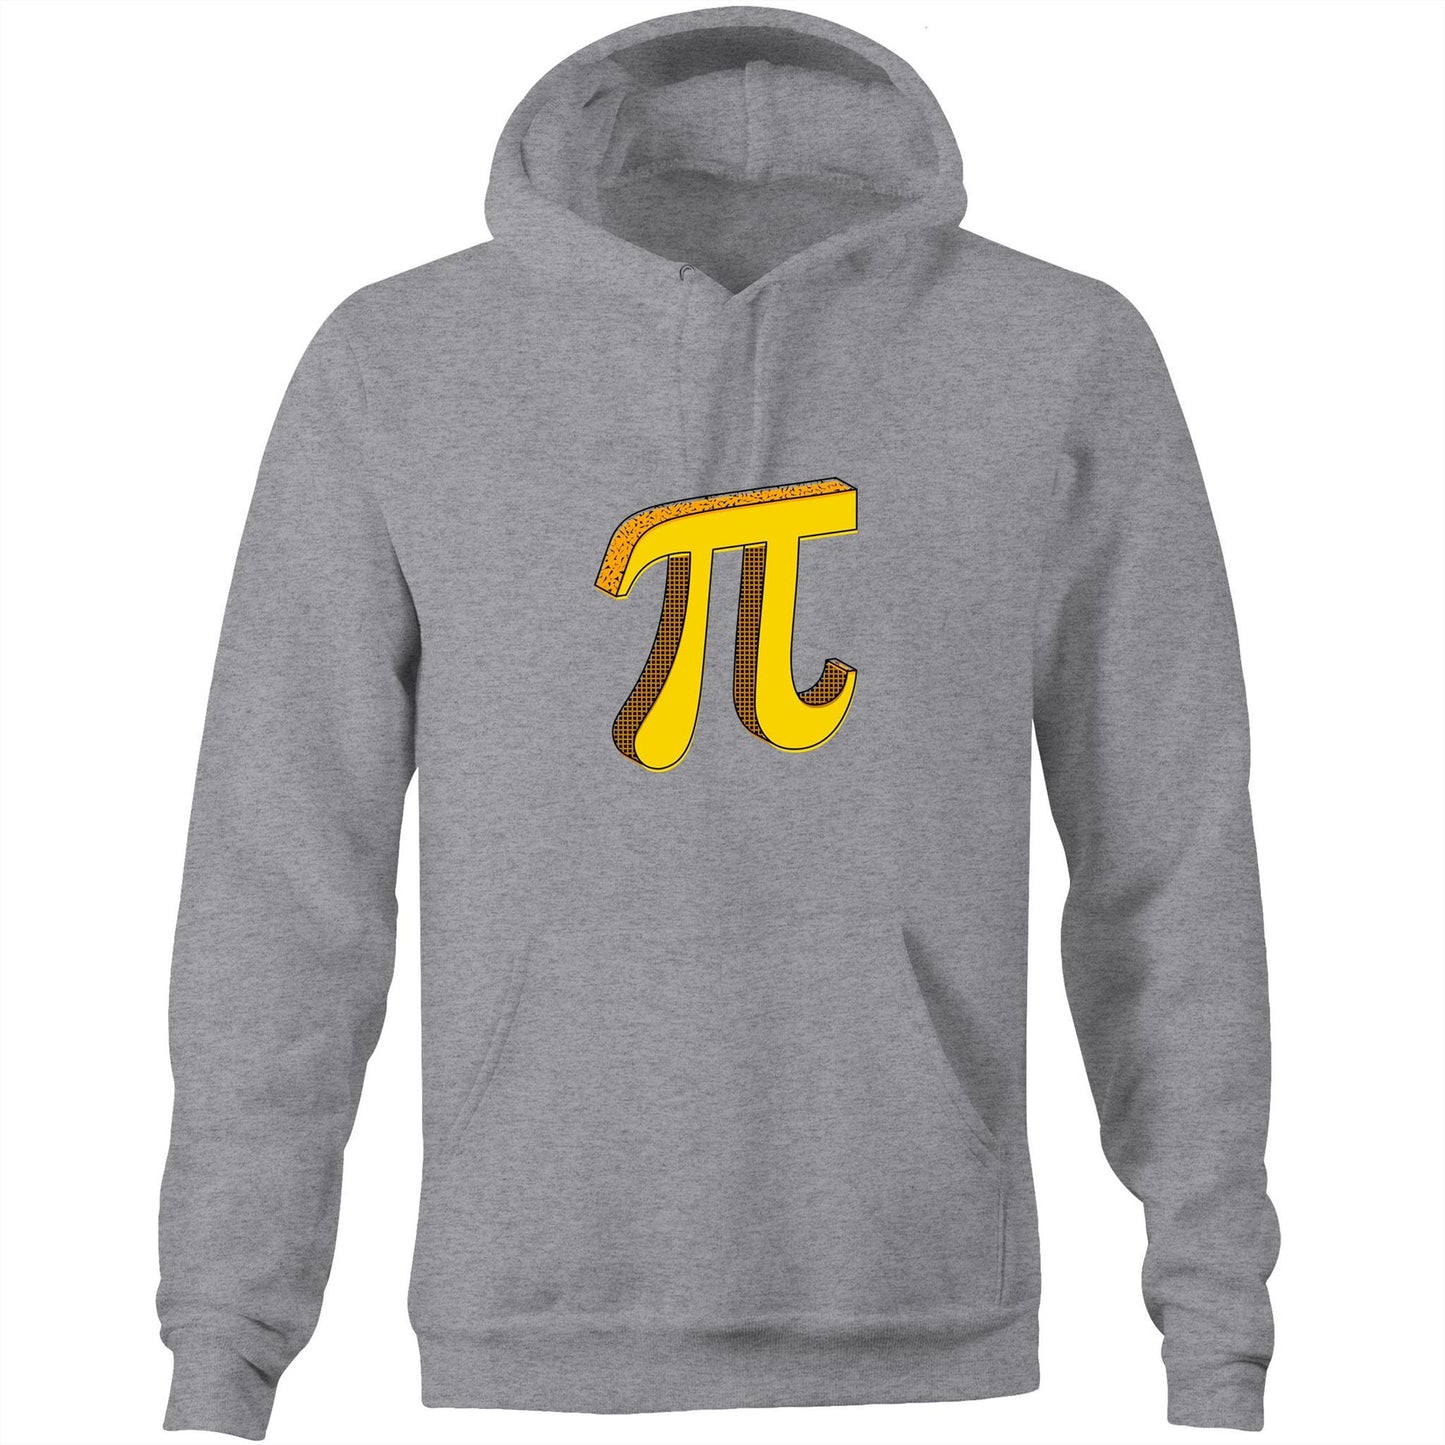 Pi - Pocket Hoodie Sweatshirt Grey Marle Hoodie Maths Science